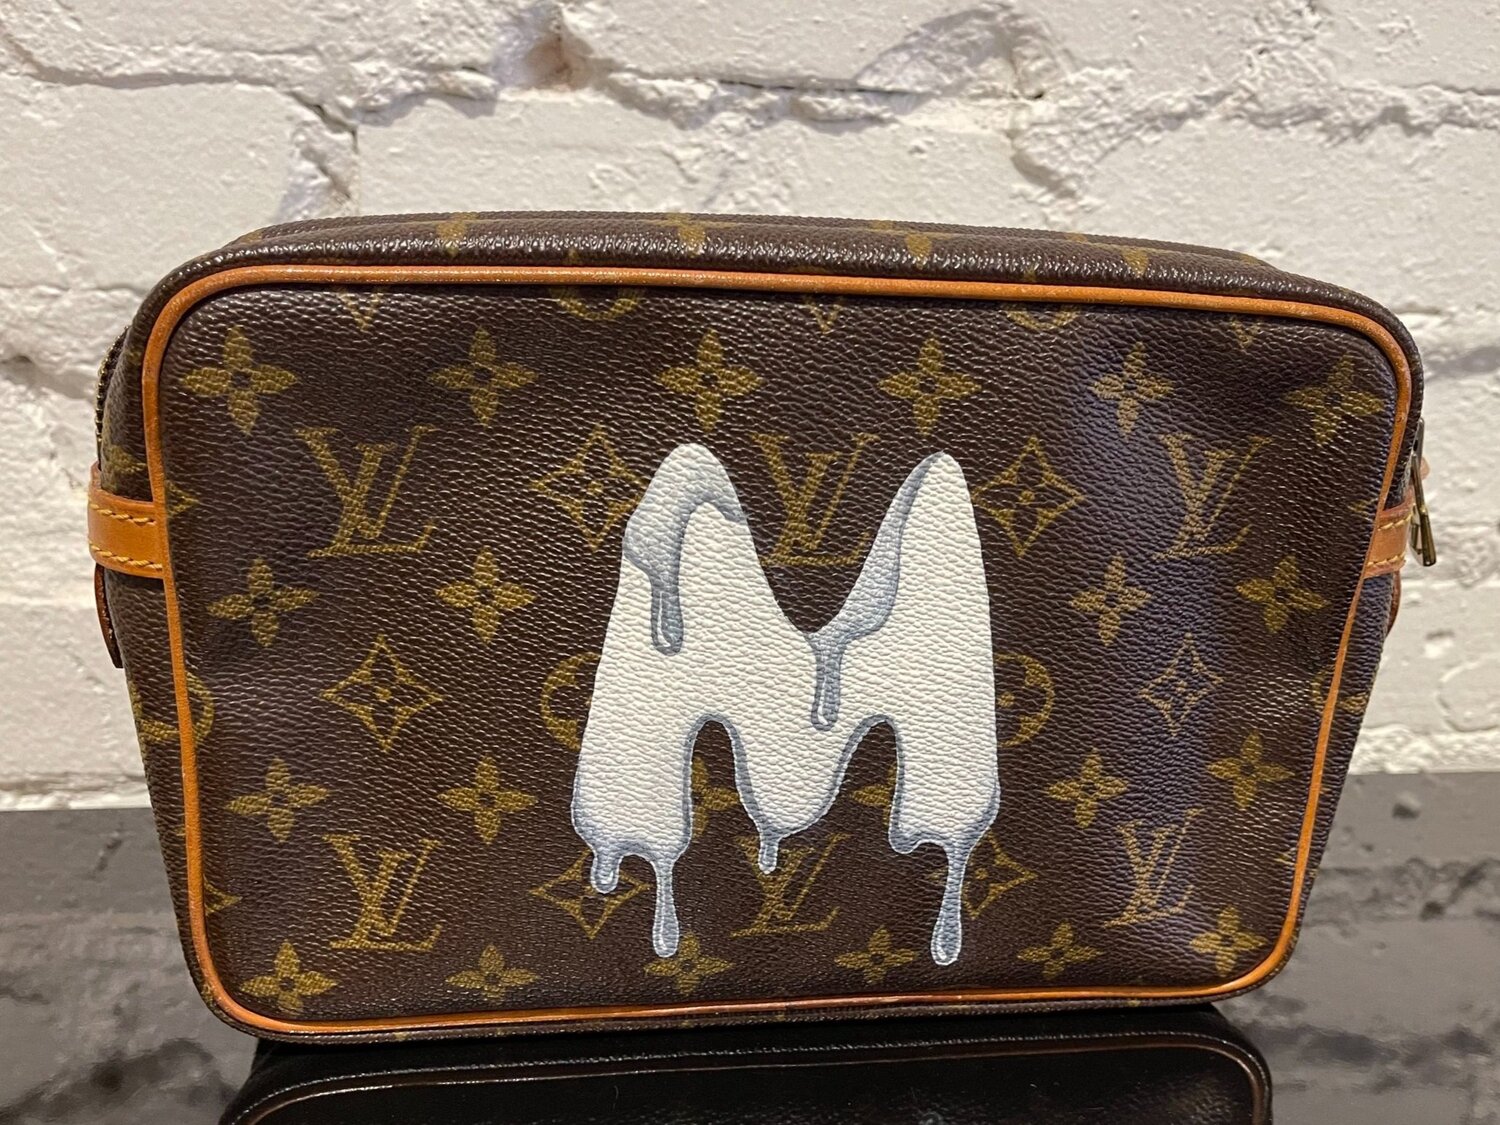 New Vintage x Louis Vuitton Bag 23 Initial "M" — Etc...